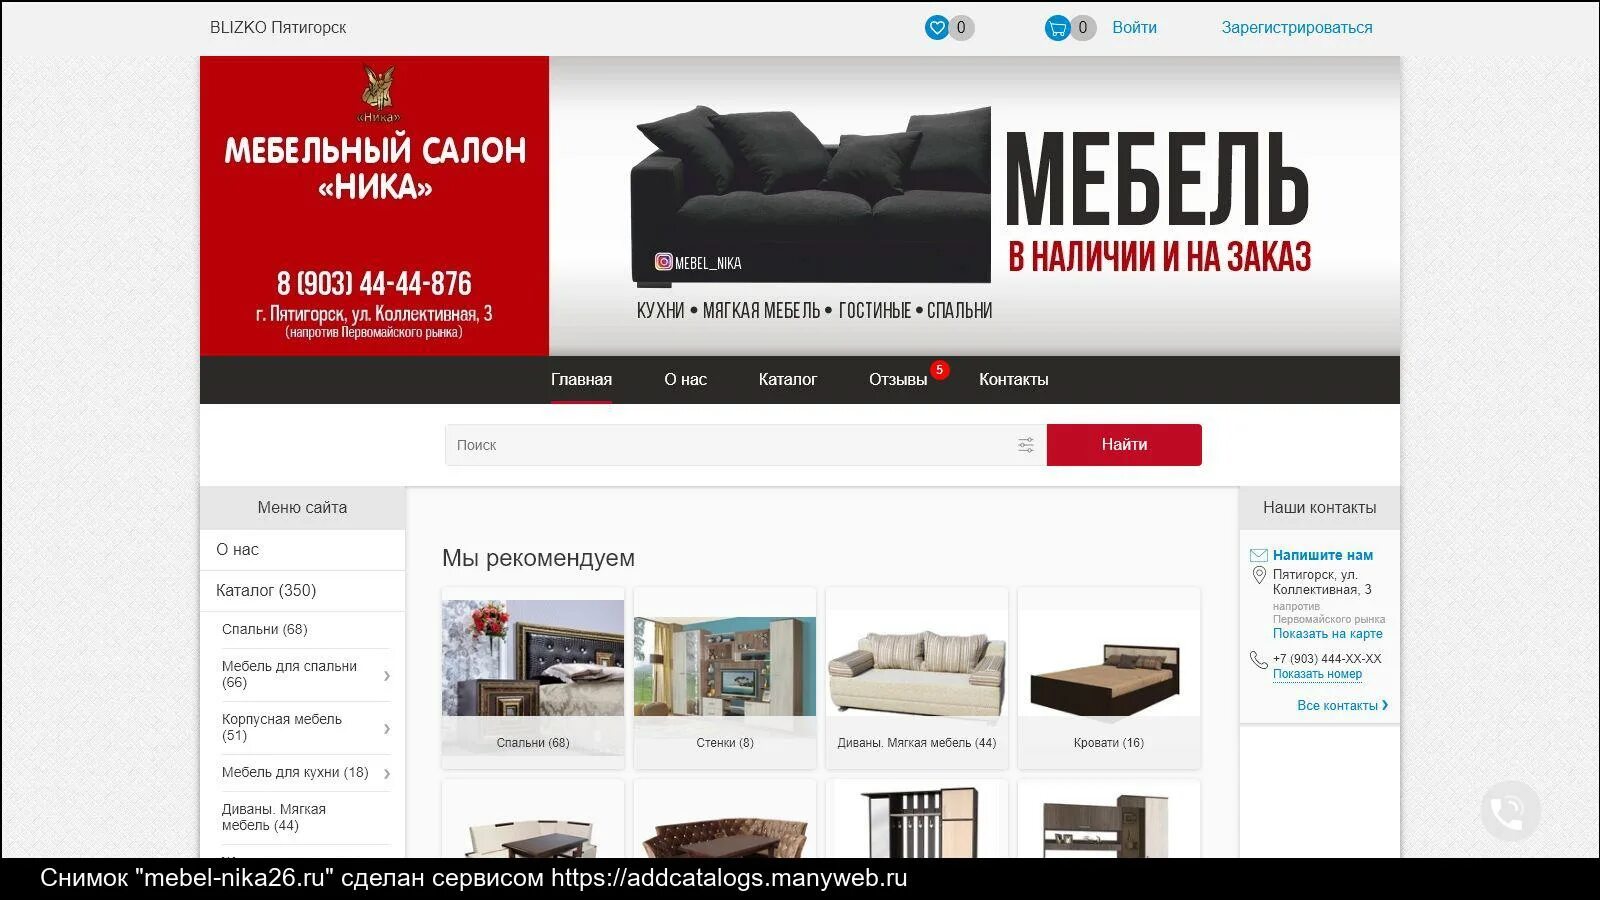 Топовые мебельные компании в России. Мебельный салон Азербайджан. Мебельная компания статус.